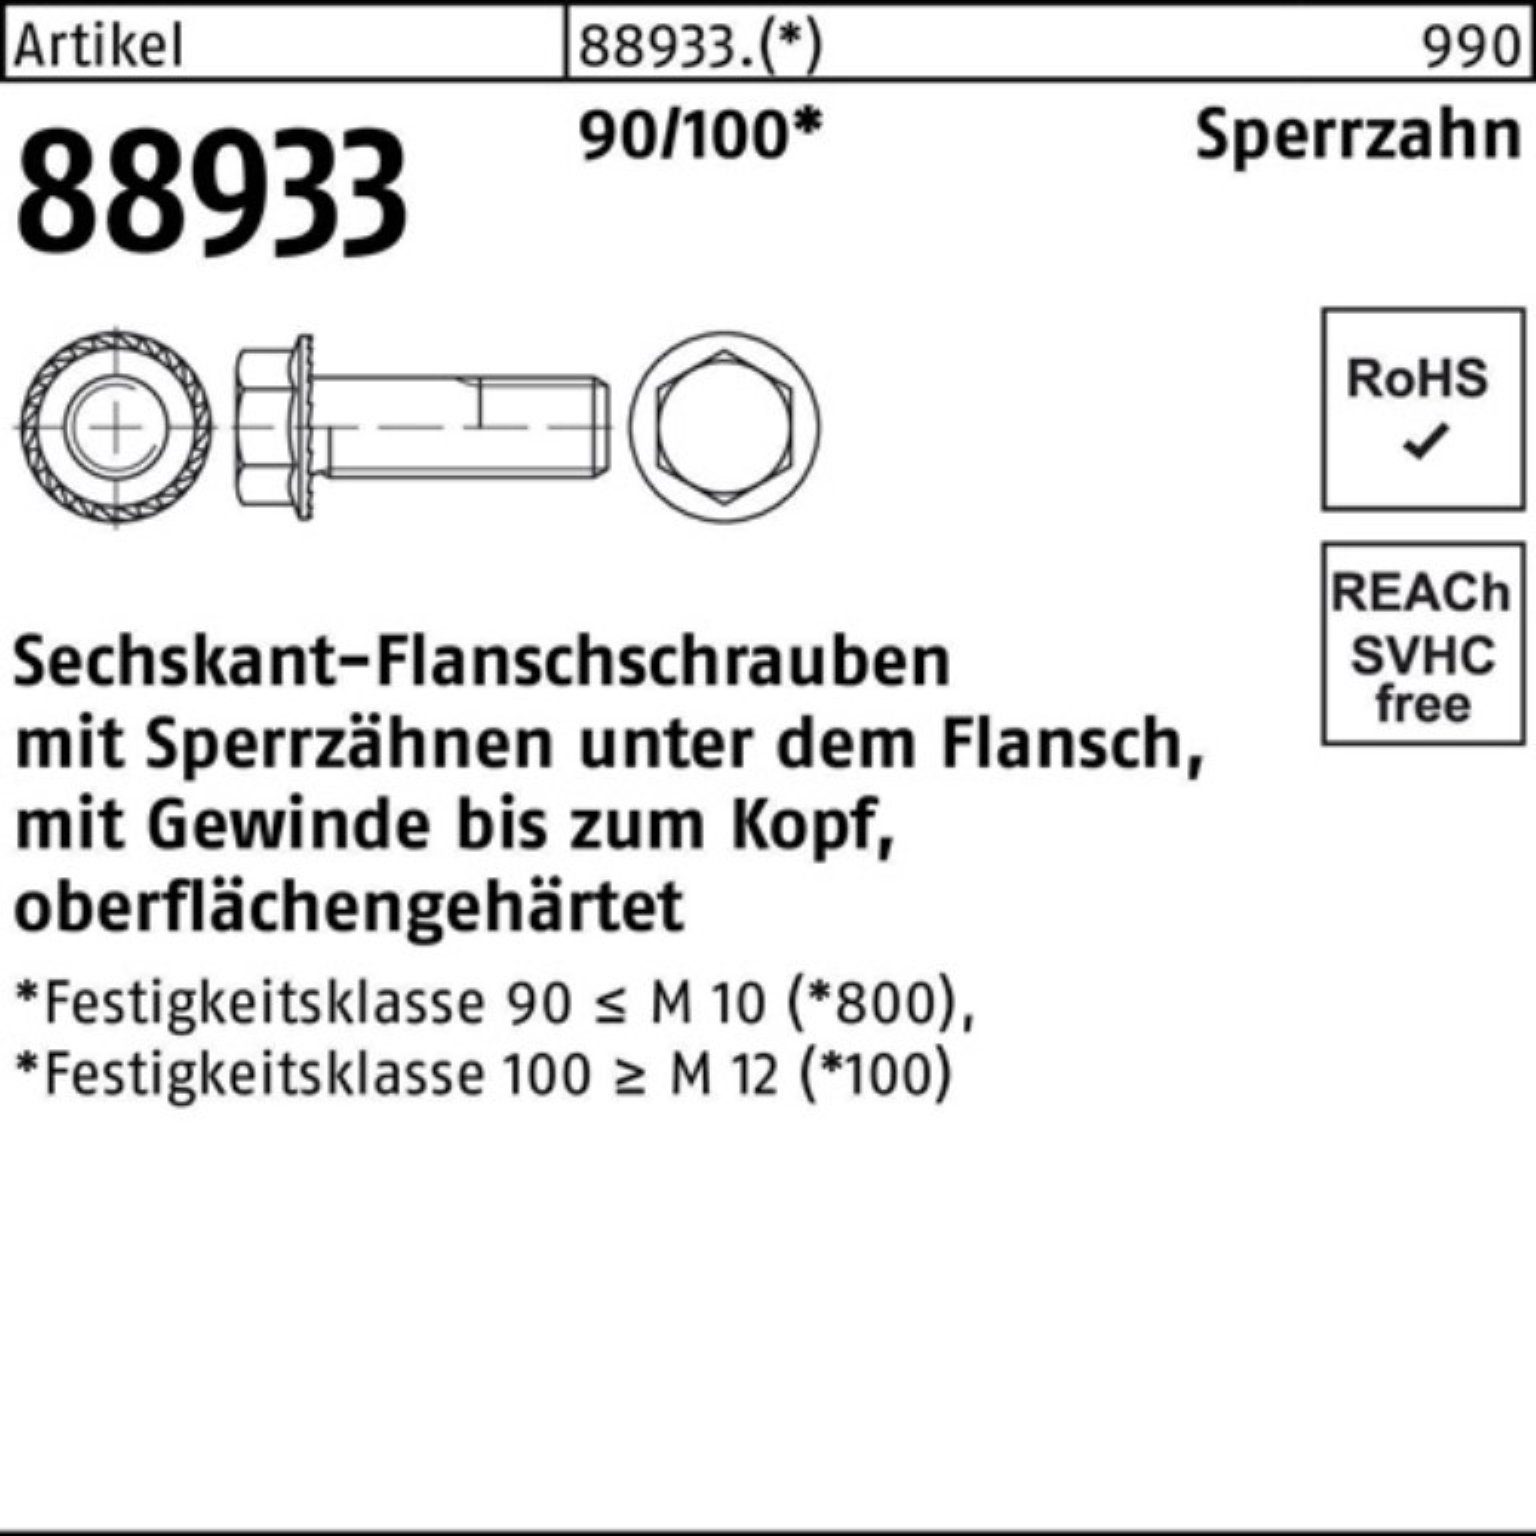 Pack 70 Sperrz. 90/100 Sechskantflanschschraube M16x Reyher R 100er 88933 VG Schraube